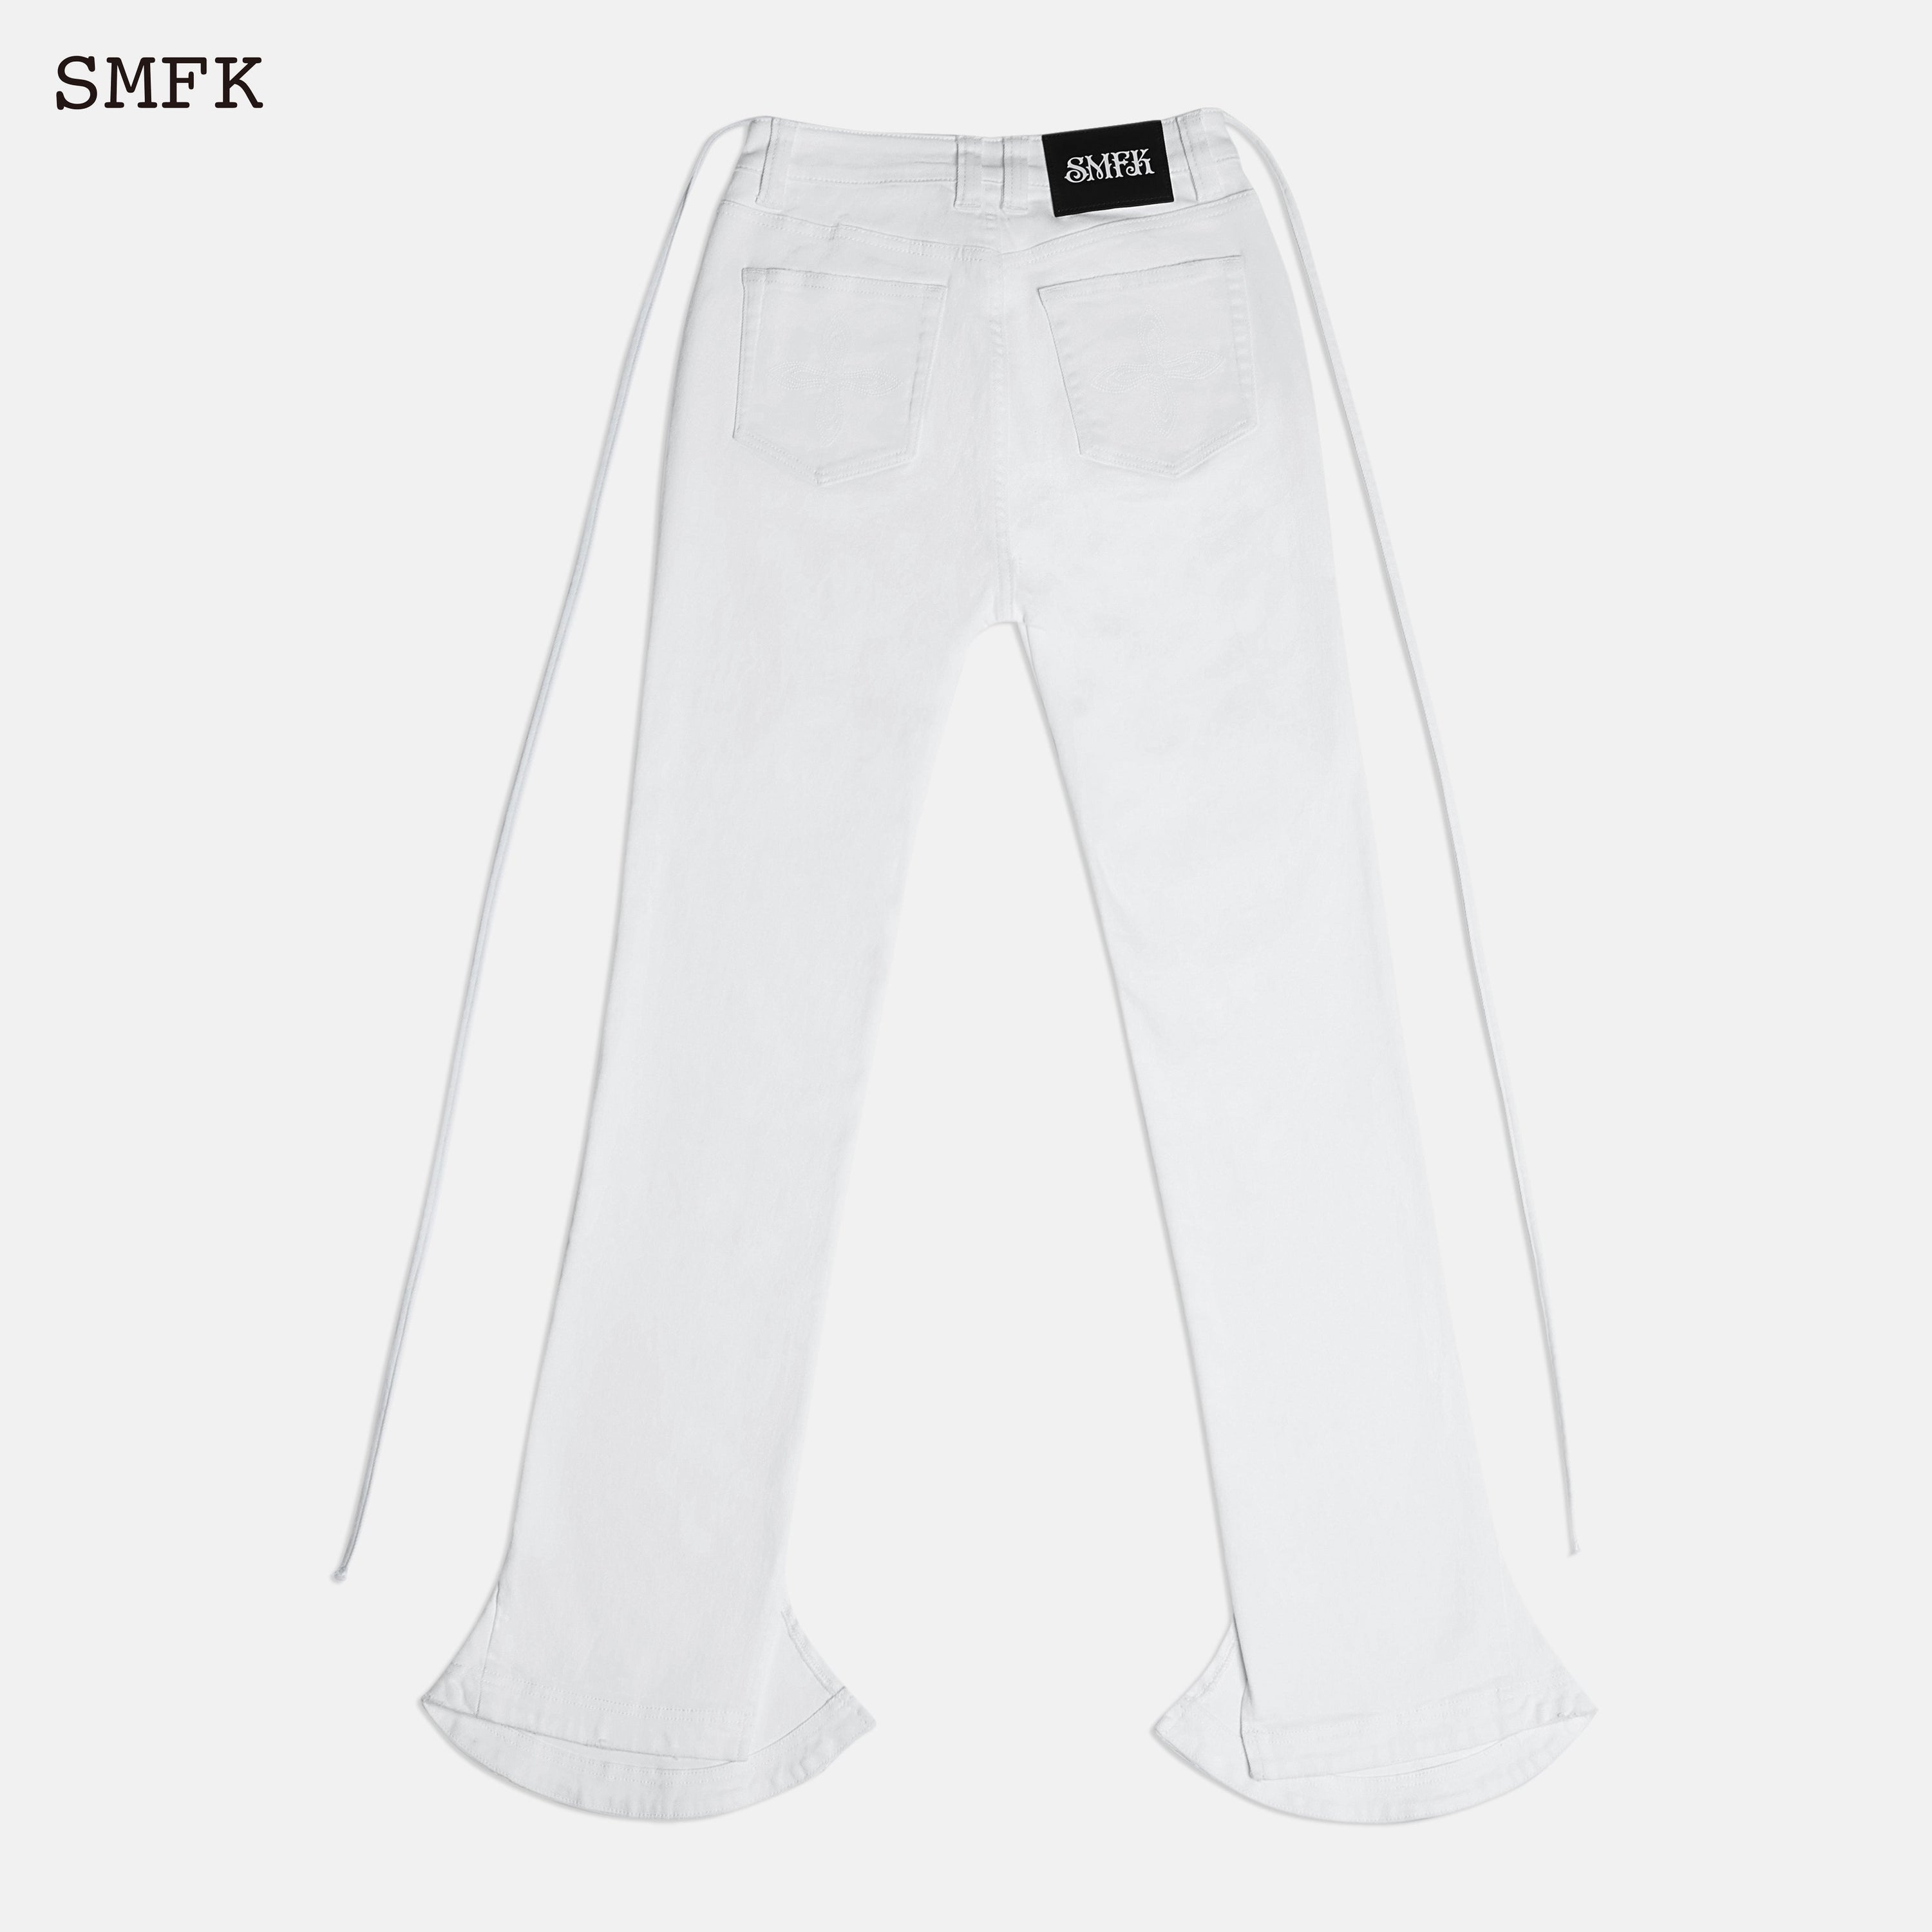 Mermaid Skinny Jeans White - SMFK Official